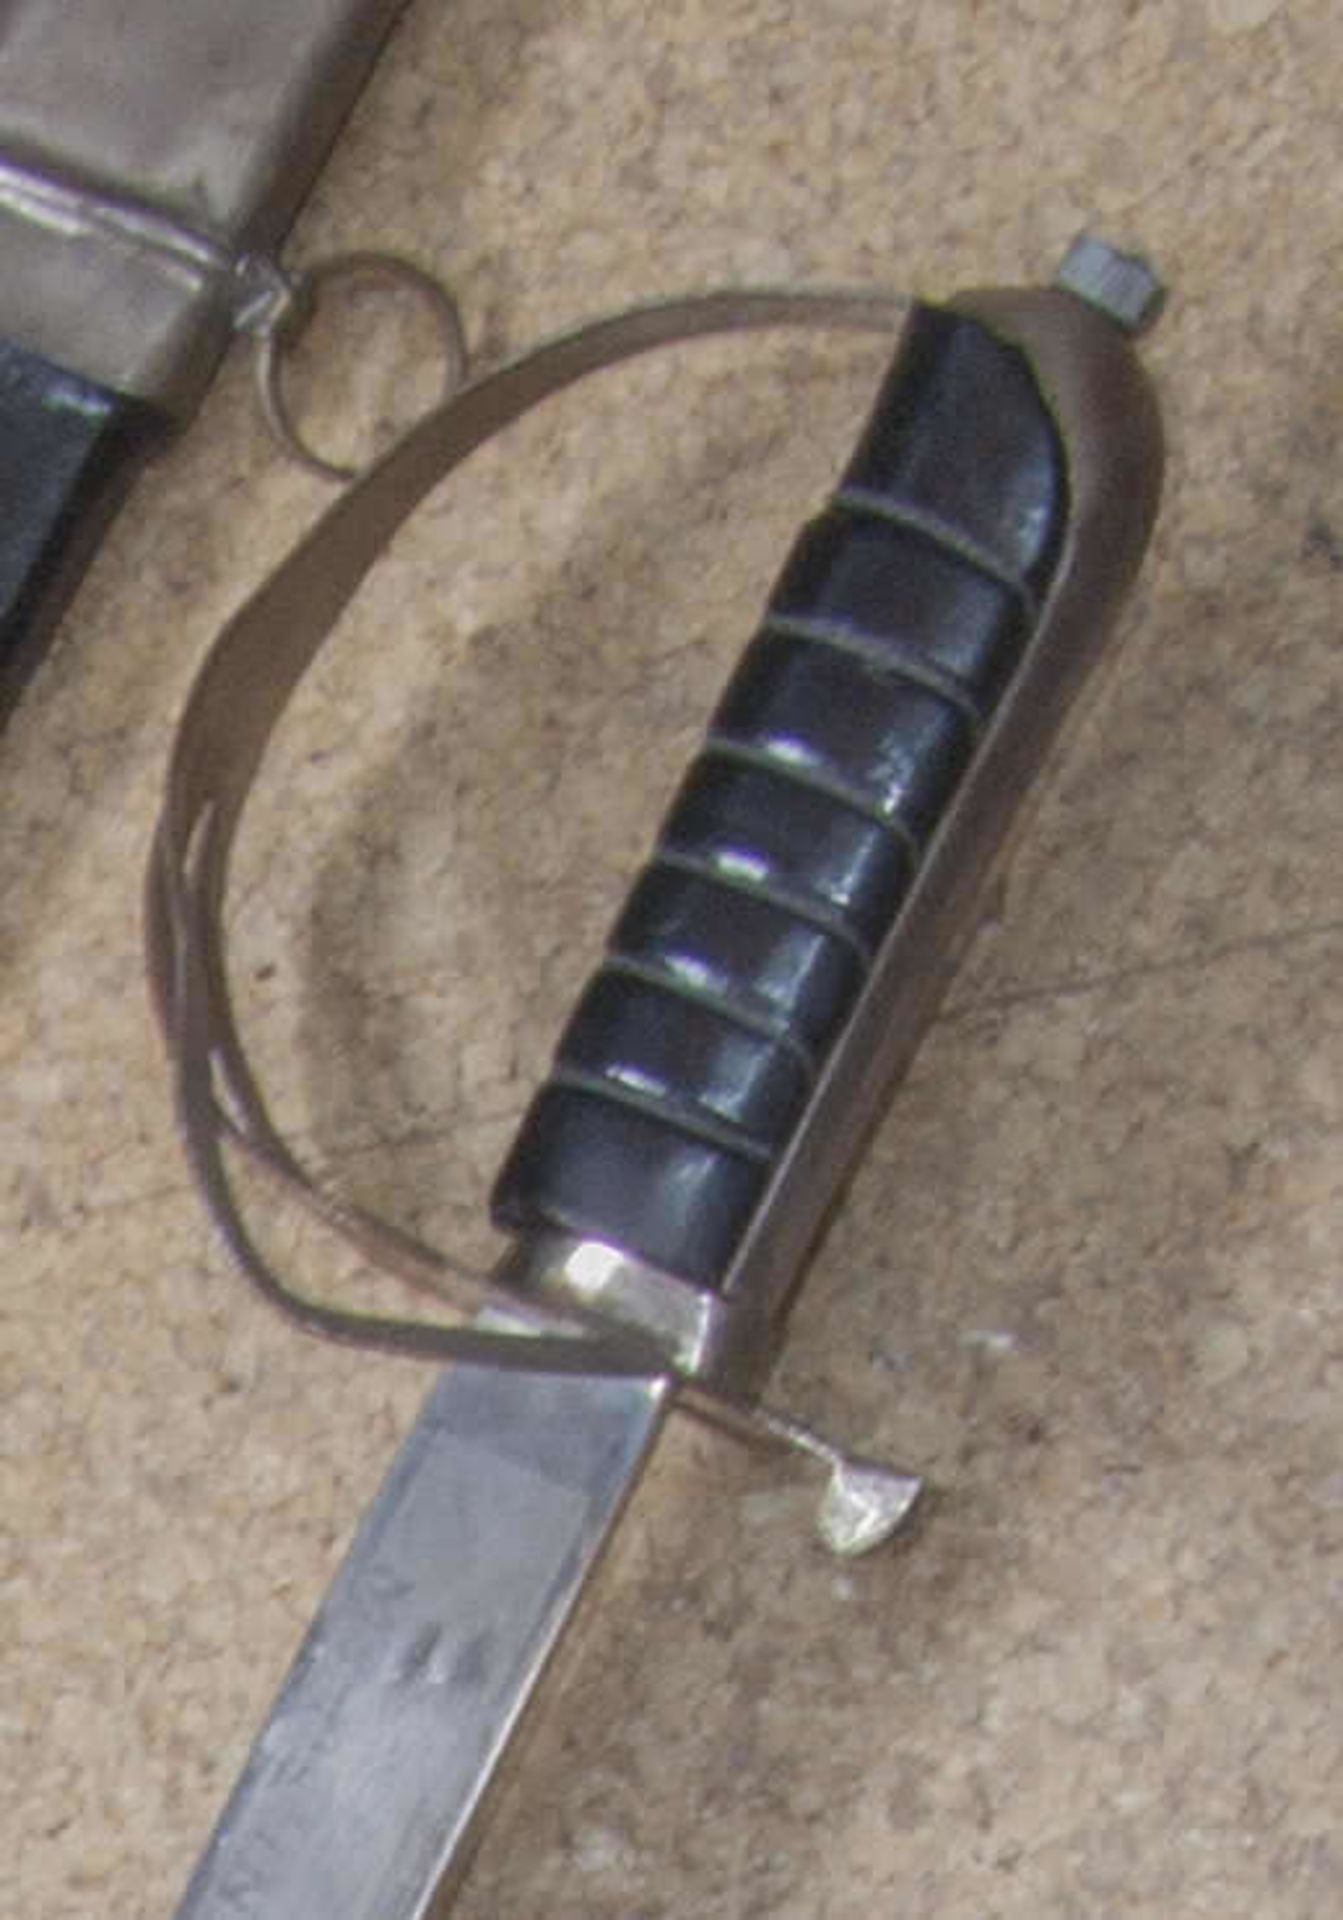 Indischer Offizieres - Säbel, geätzte Klinge, Lederscheide, Griffbügel und Parierstange Metall. - Bild 2 aus 2